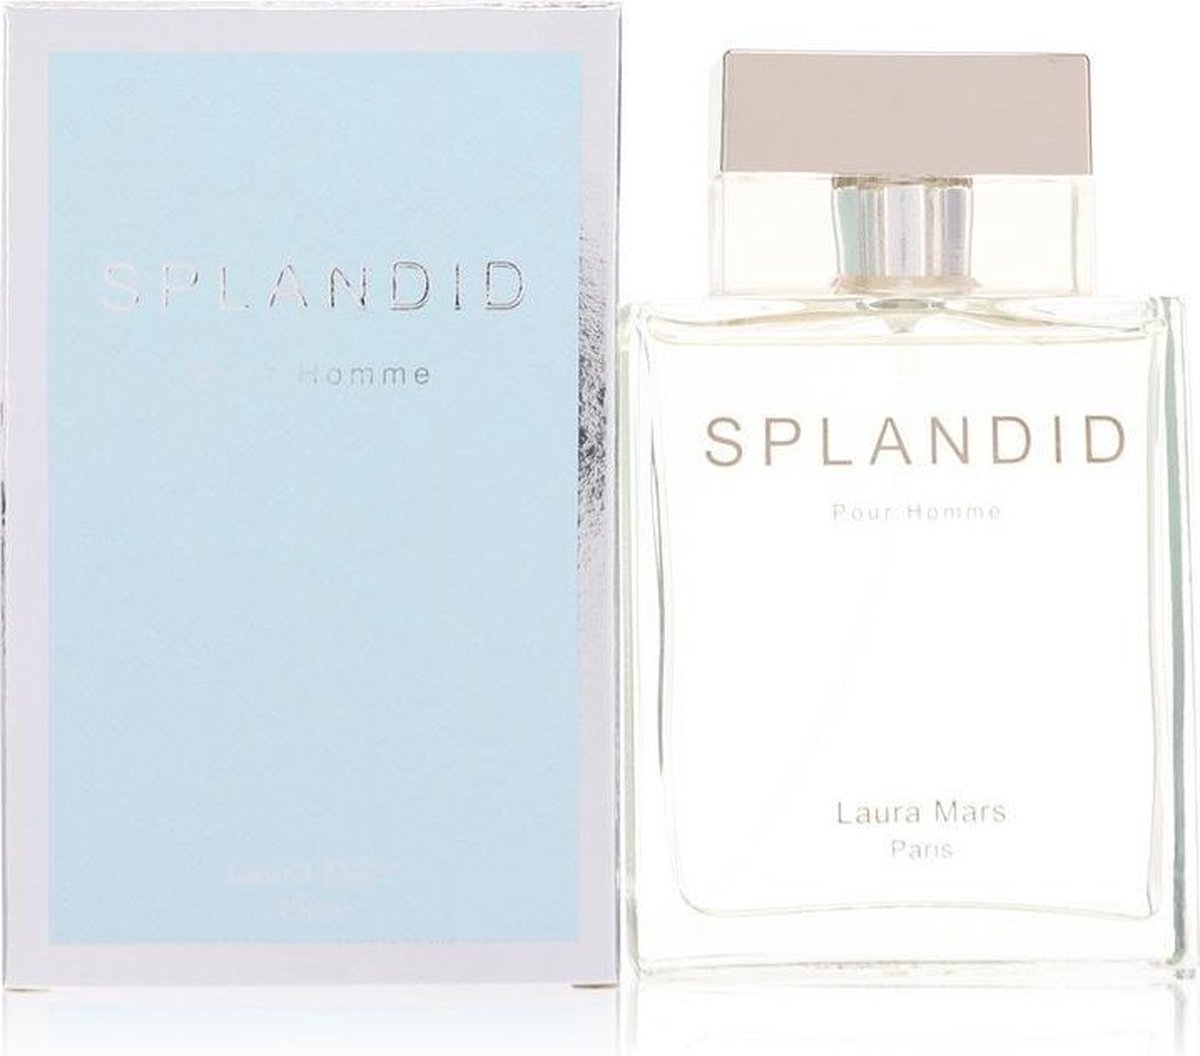 Splandid Pour Homme by Laura Mars 100 ml - Eau De Parfum Spray